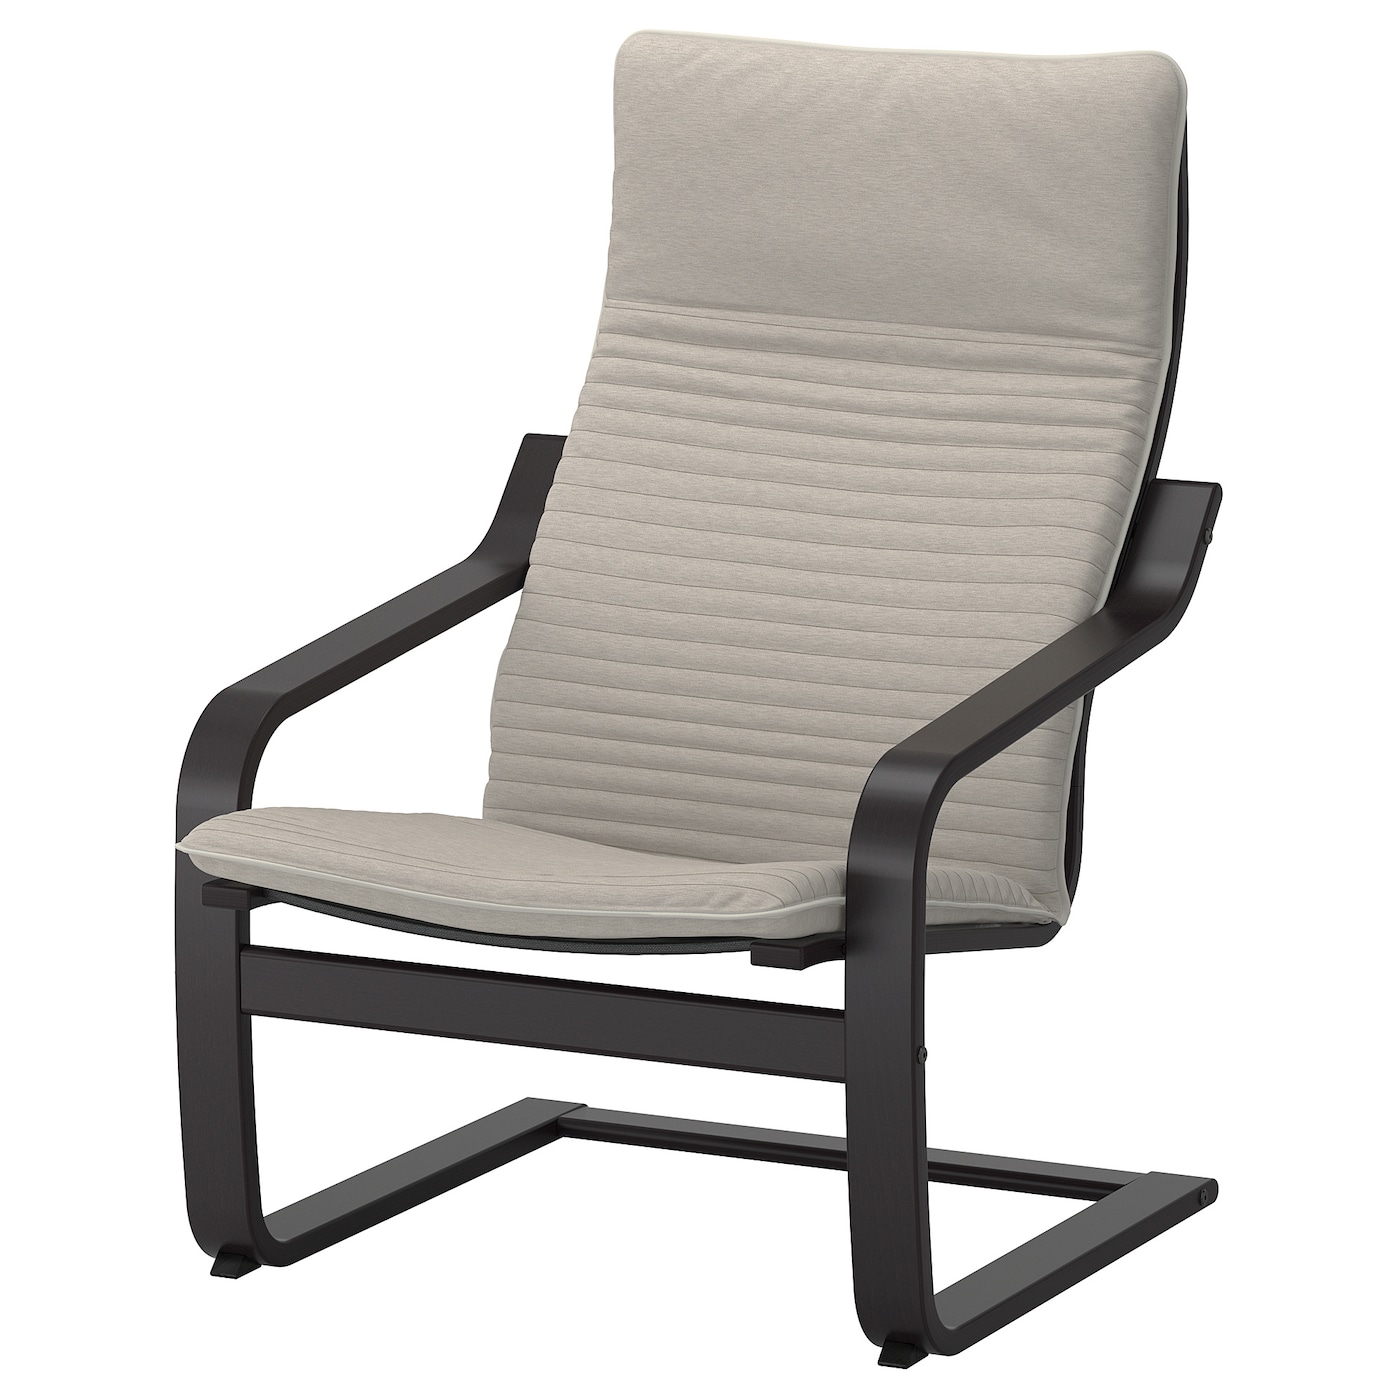 ПОЭНГ Кресло, черно-коричневый/Книса светло-бежевый POÄNG IKEA кресло tetchair сн757 ткань коричневый бежевый c 26 c 13